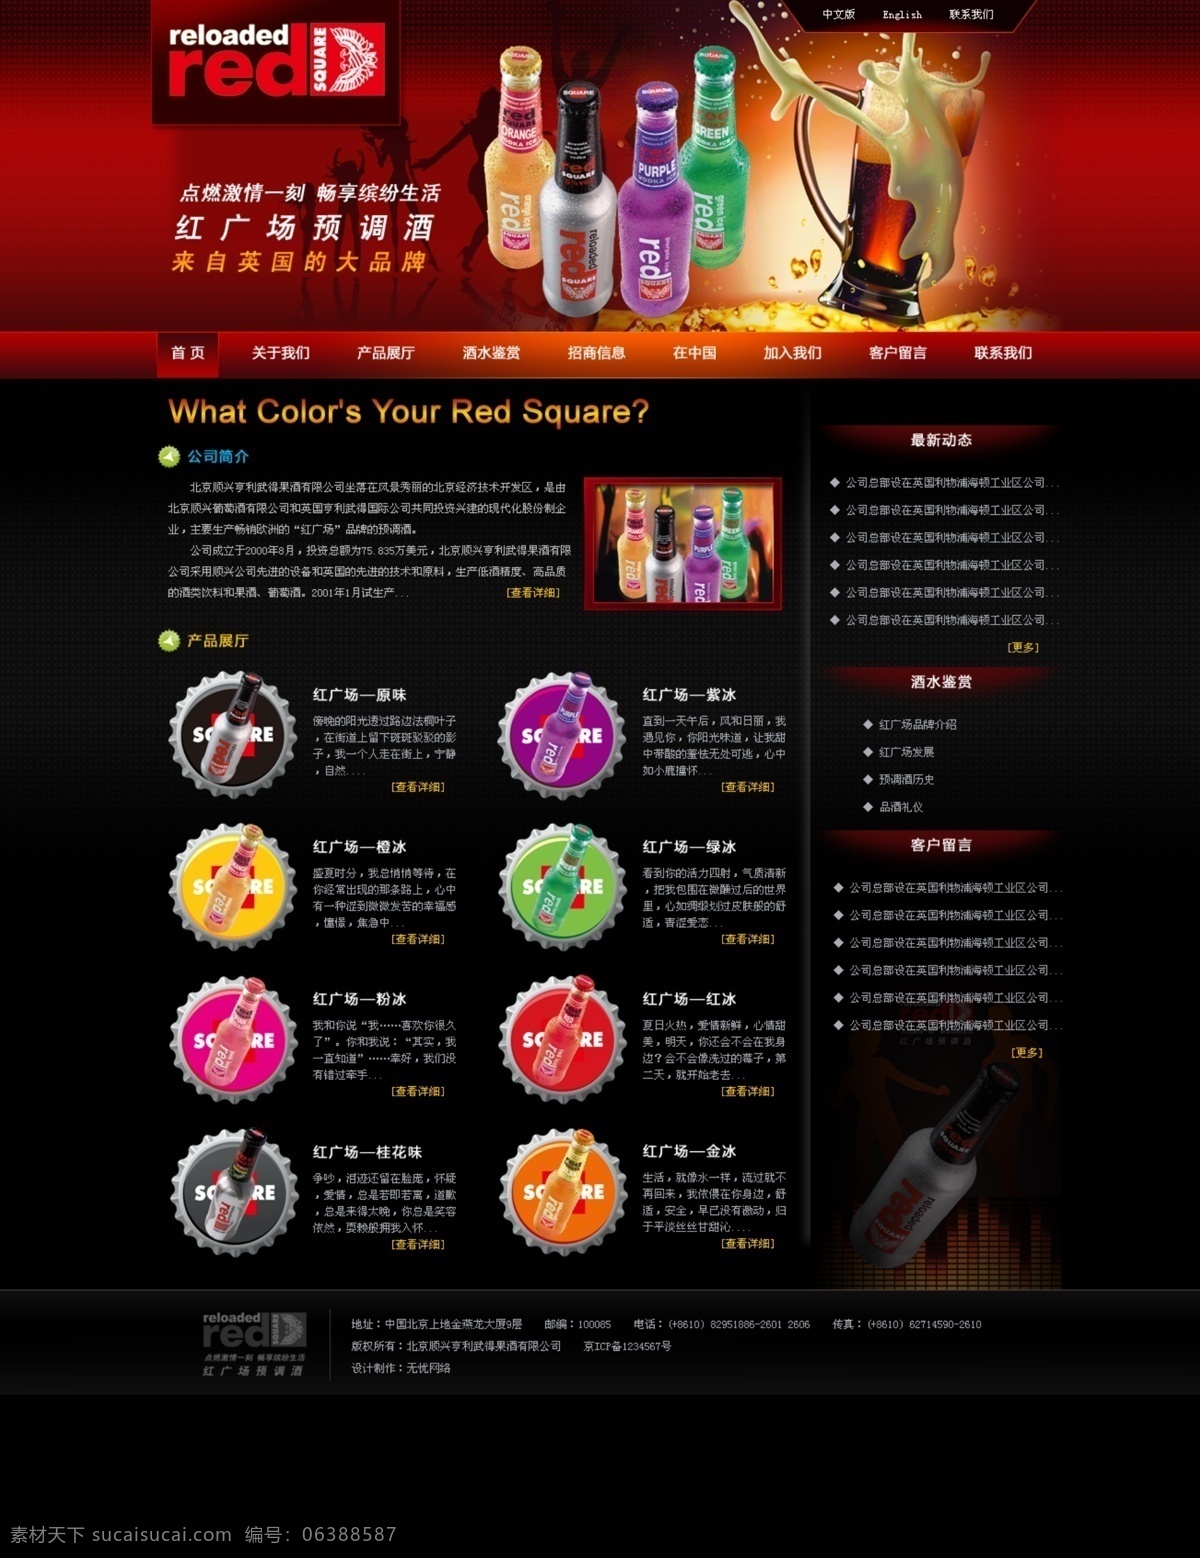 啤酒 网页模板 网页 网页效果图 网站模板 源文件 中文模版 啤酒网页模板 网页素材